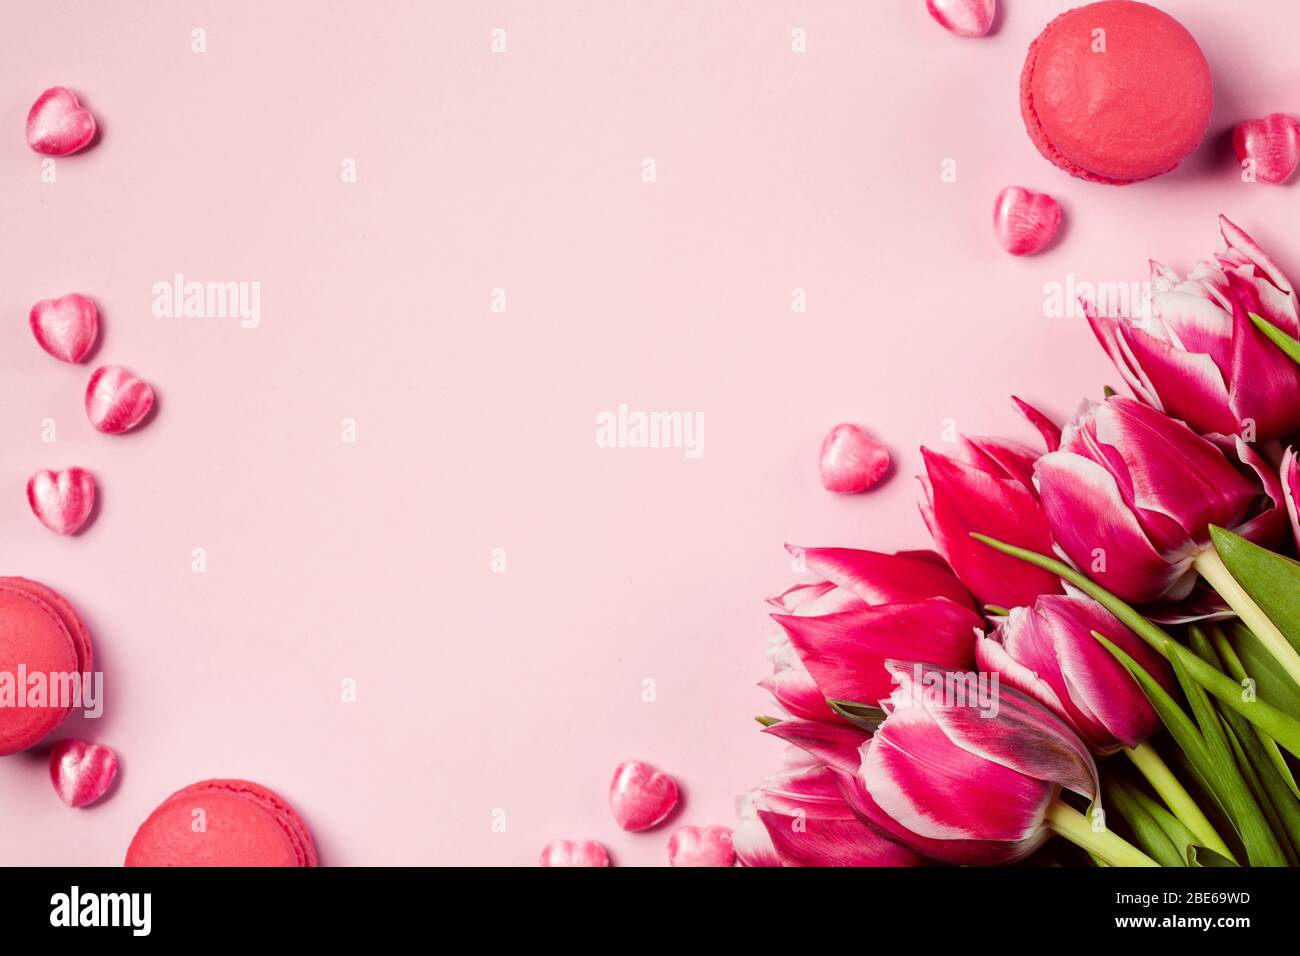 Bouquet de fleurs de tulipes roses sur table de pinkish. Bonne Saint Valentin fond rose monochrome. Concept de la fête des mères. Espace de copie Banque D'Images